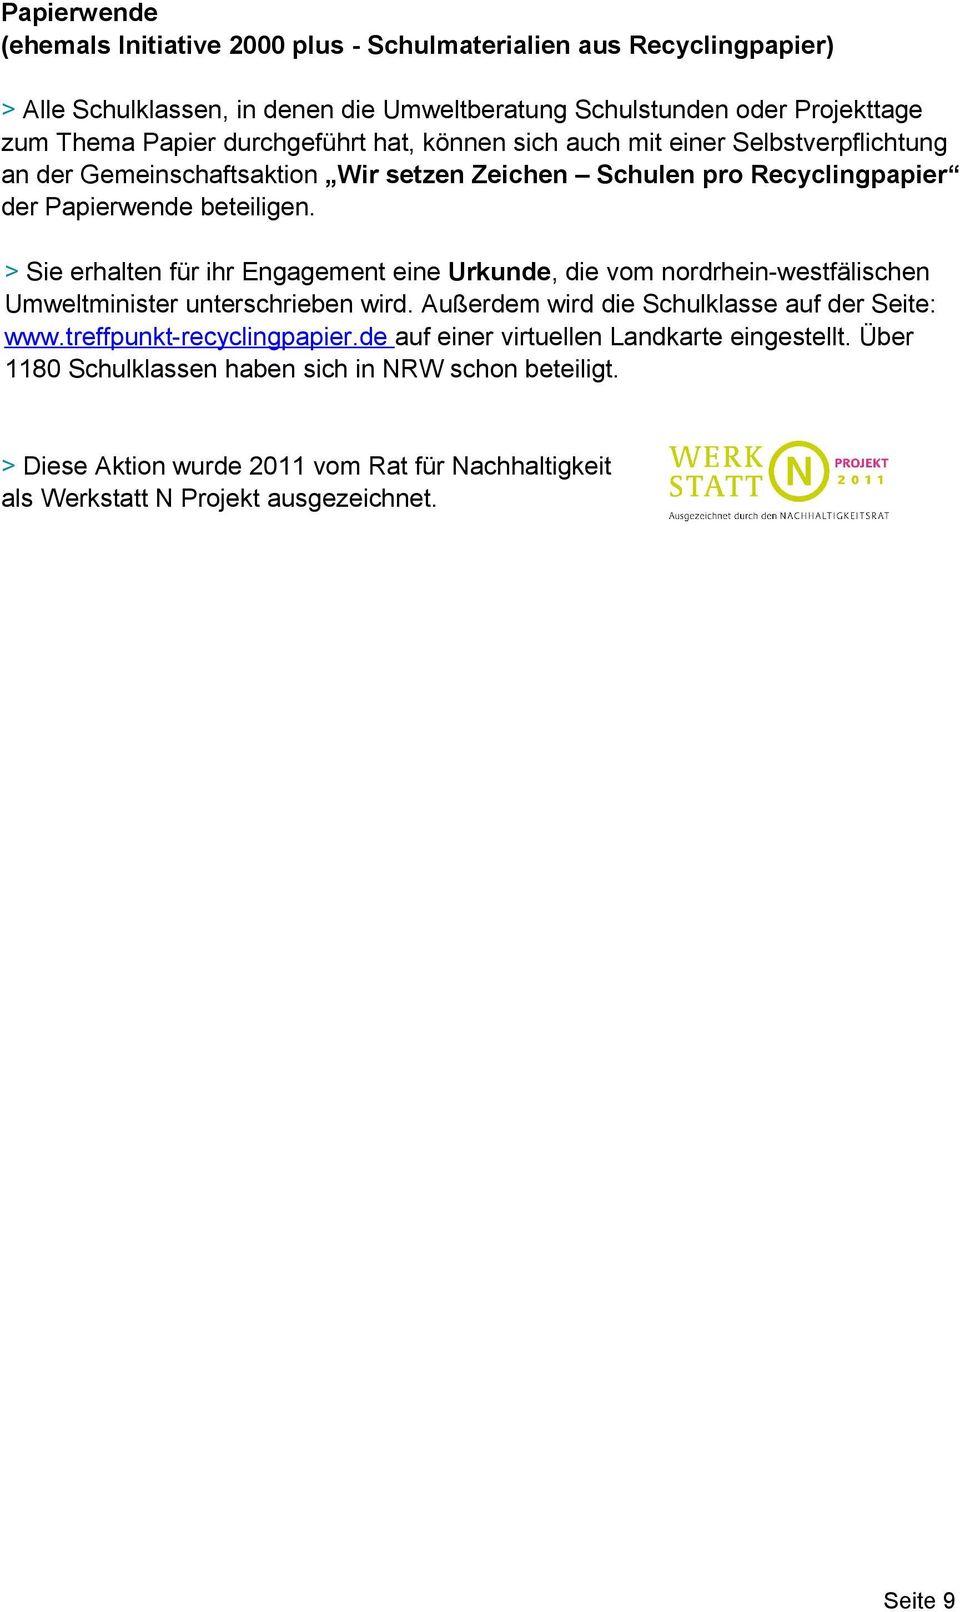 > Sie erhalten für ihr Engagement eine Urkunde, die vom nordrhein-westfälischen Umweltminister unterschrieben wird. Außerdem wird die Schulklasse auf der Seite: www.